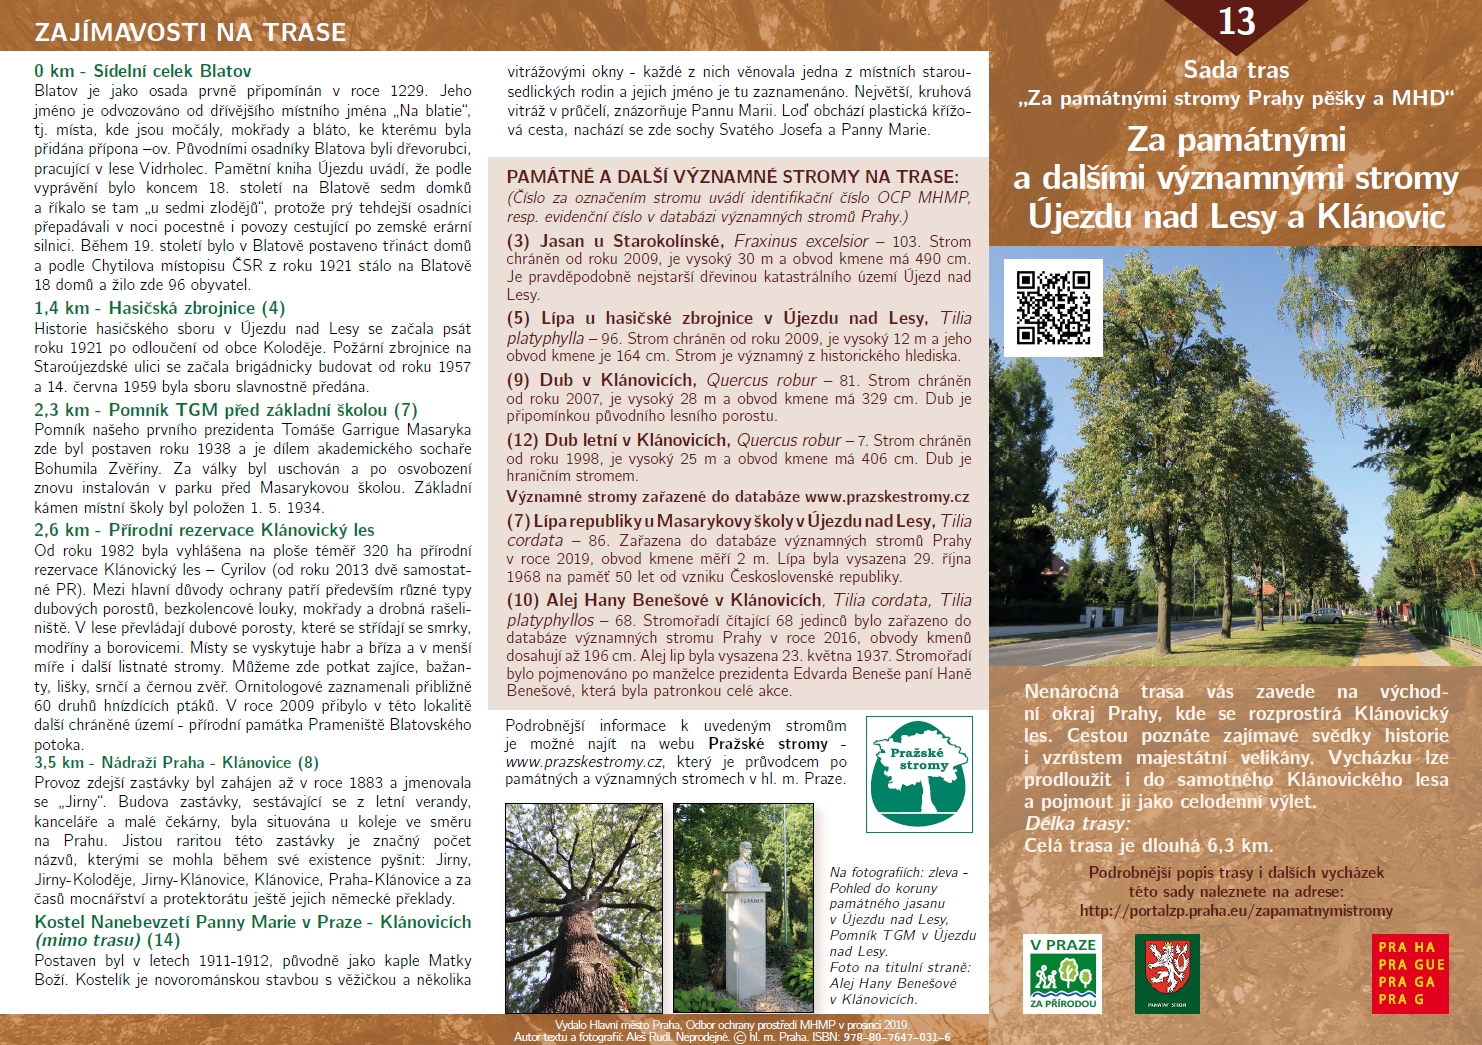 3106438_Informační materiál k trase Za památnými a dalšími významnými stromy Újezdu nad Lesy a Klánovic